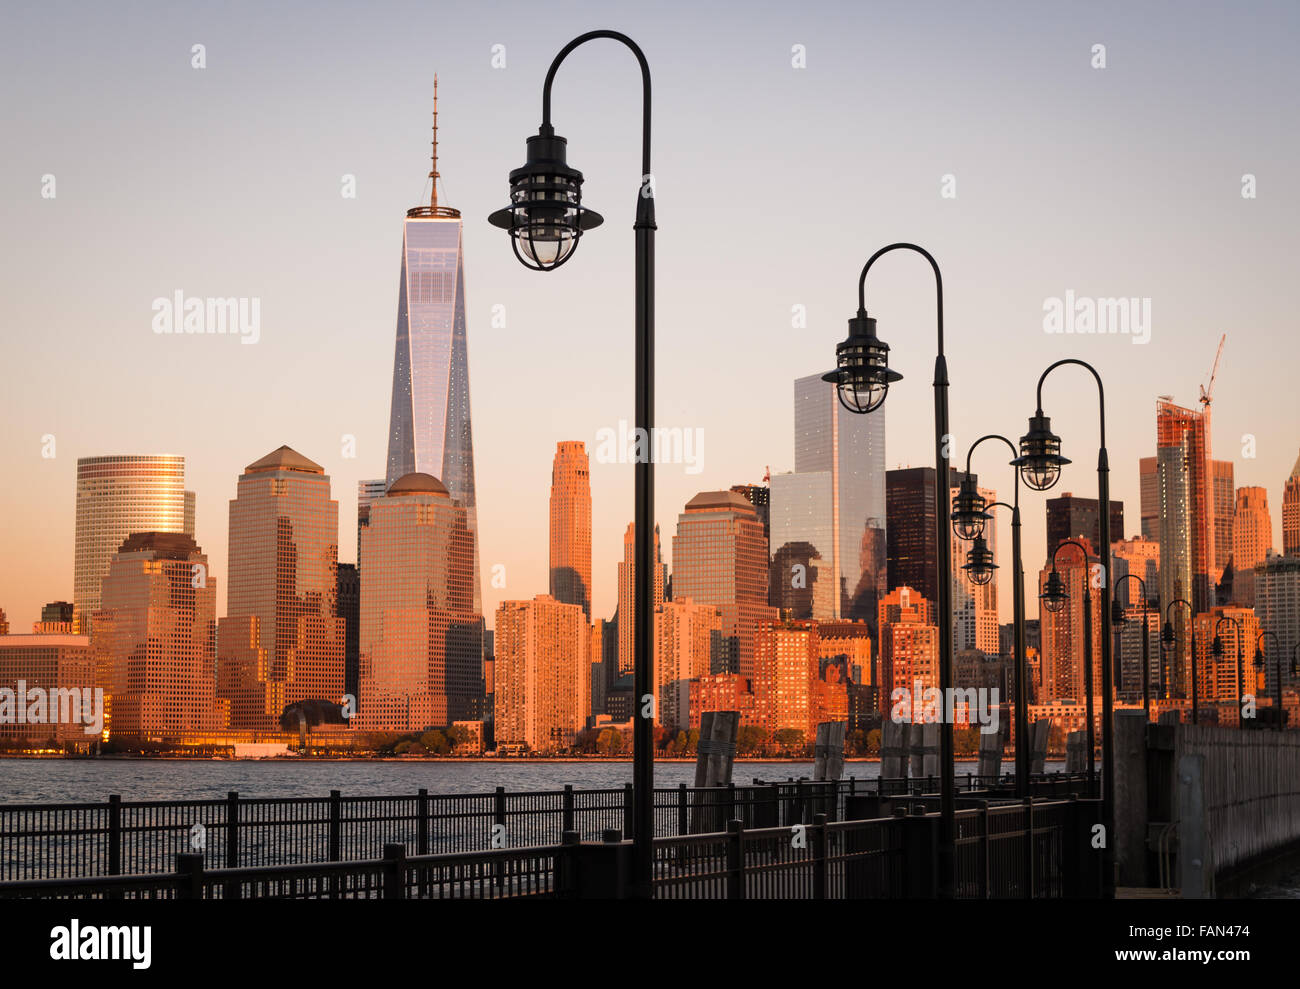 Ein verlassener Pier mit Straßenlaternen freut über den Hudson River auf die unteren Skyline von Manhattan, die den goldenen Sonnenuntergang widerspiegelt. Stockfoto